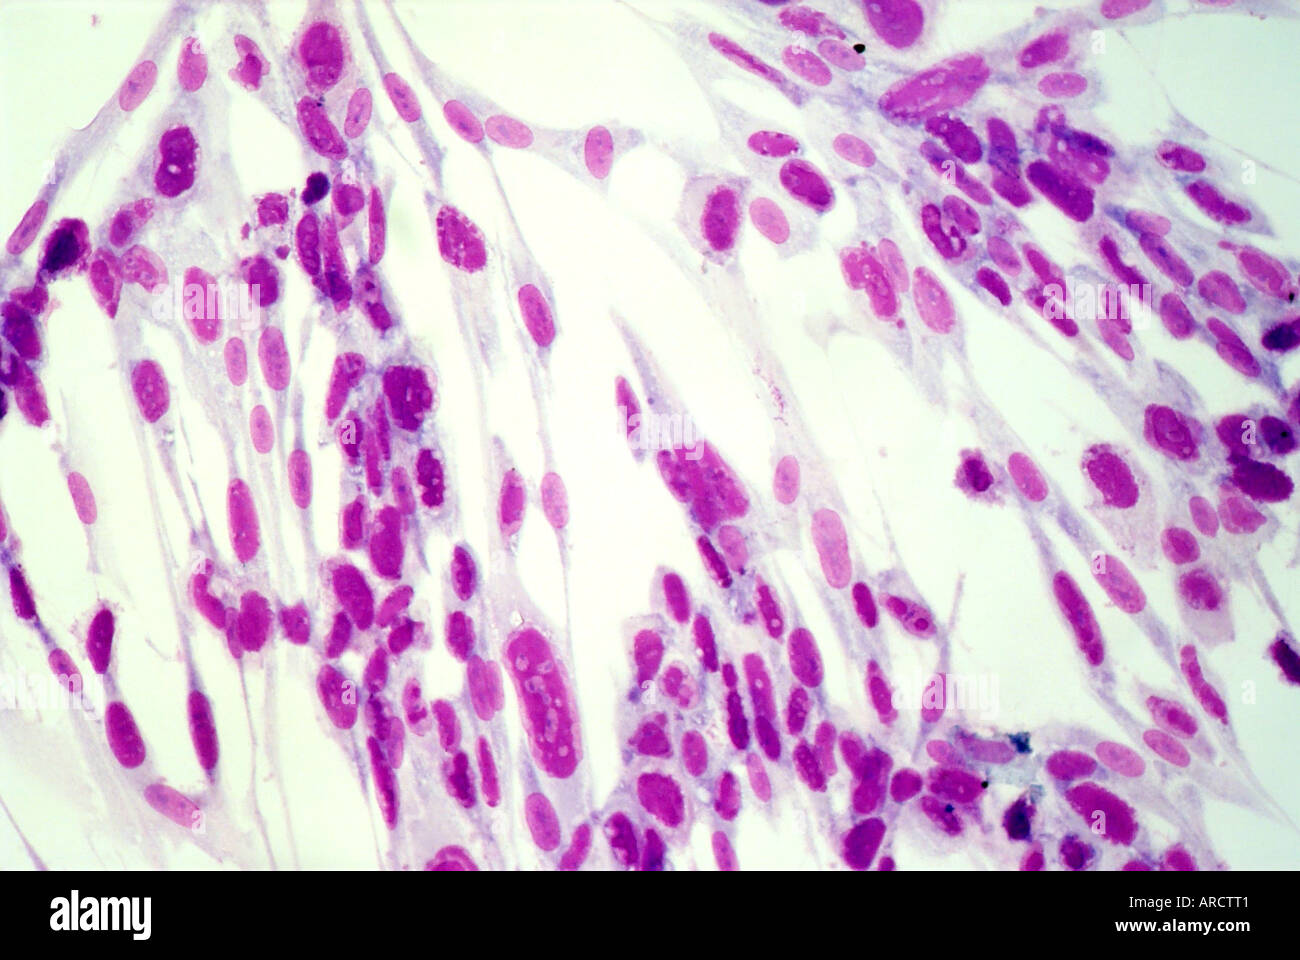 Umana coltivati in vitro di fibroblasti primari che mostra un tipico effetto citopatico dovuta alla infezione di coltura cellulare. Foto Stock